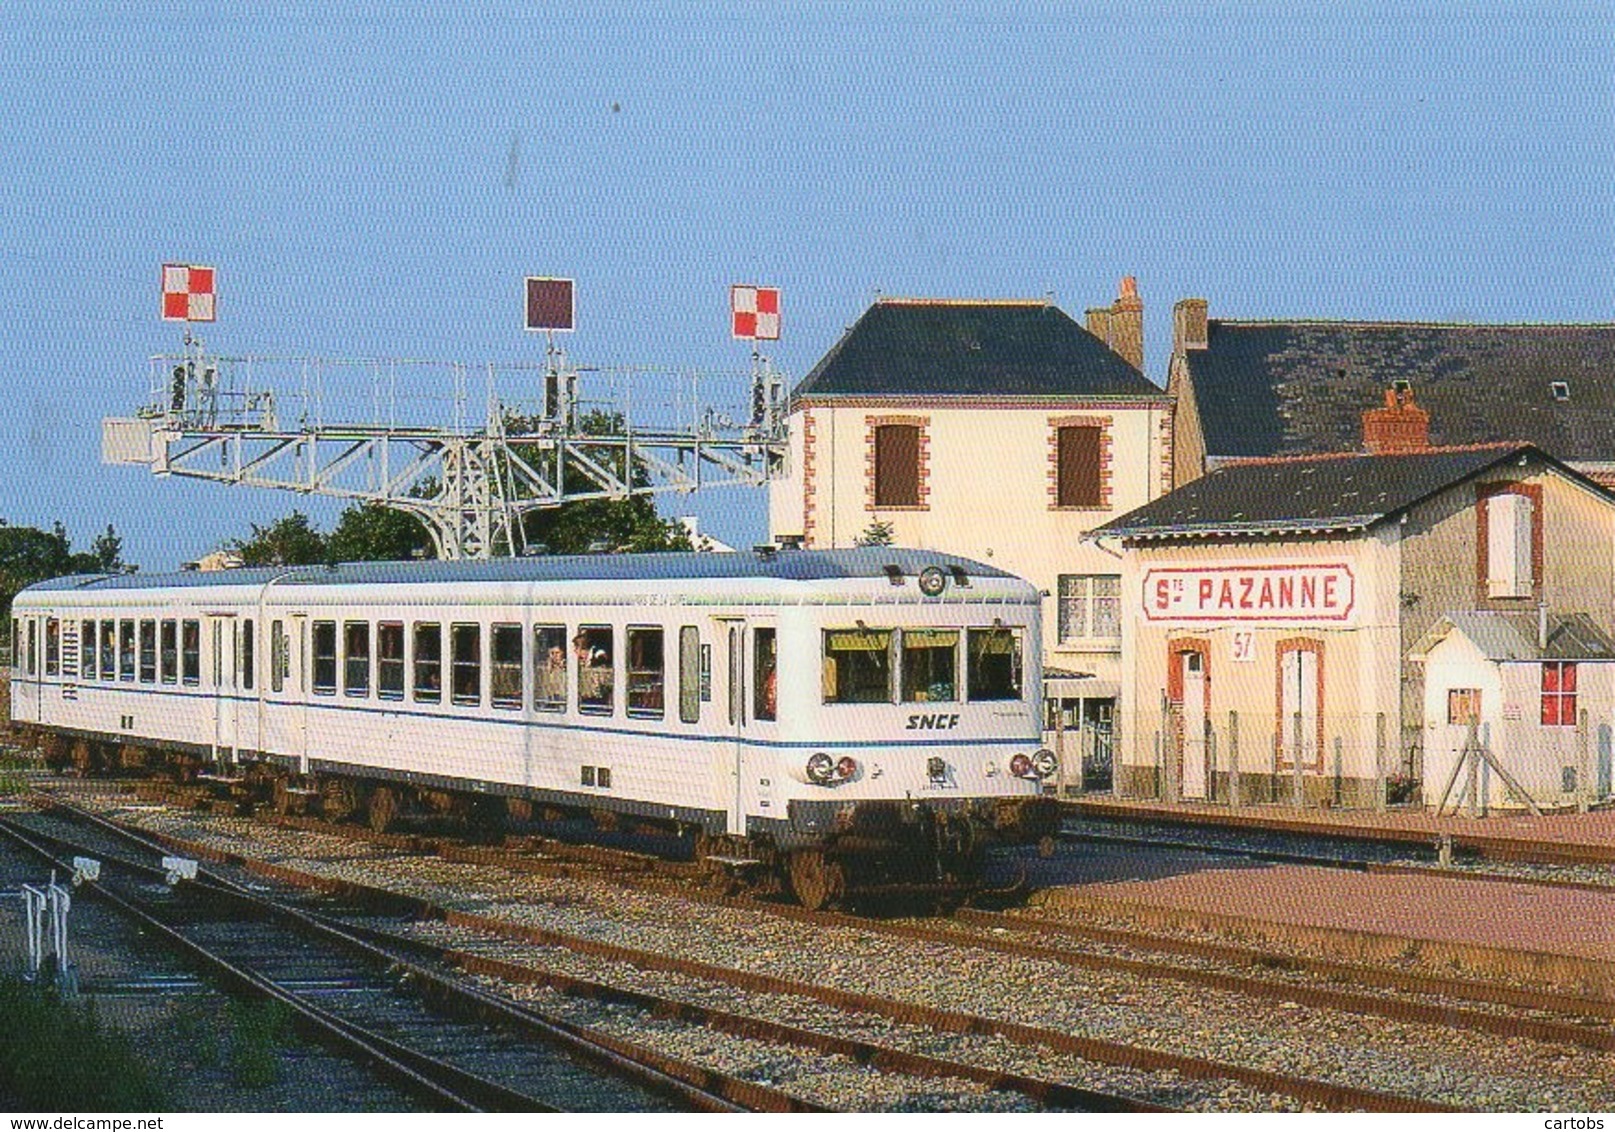 44 Un TER En Gare De SAINTE-PAZANNE - Estaciones Con Trenes